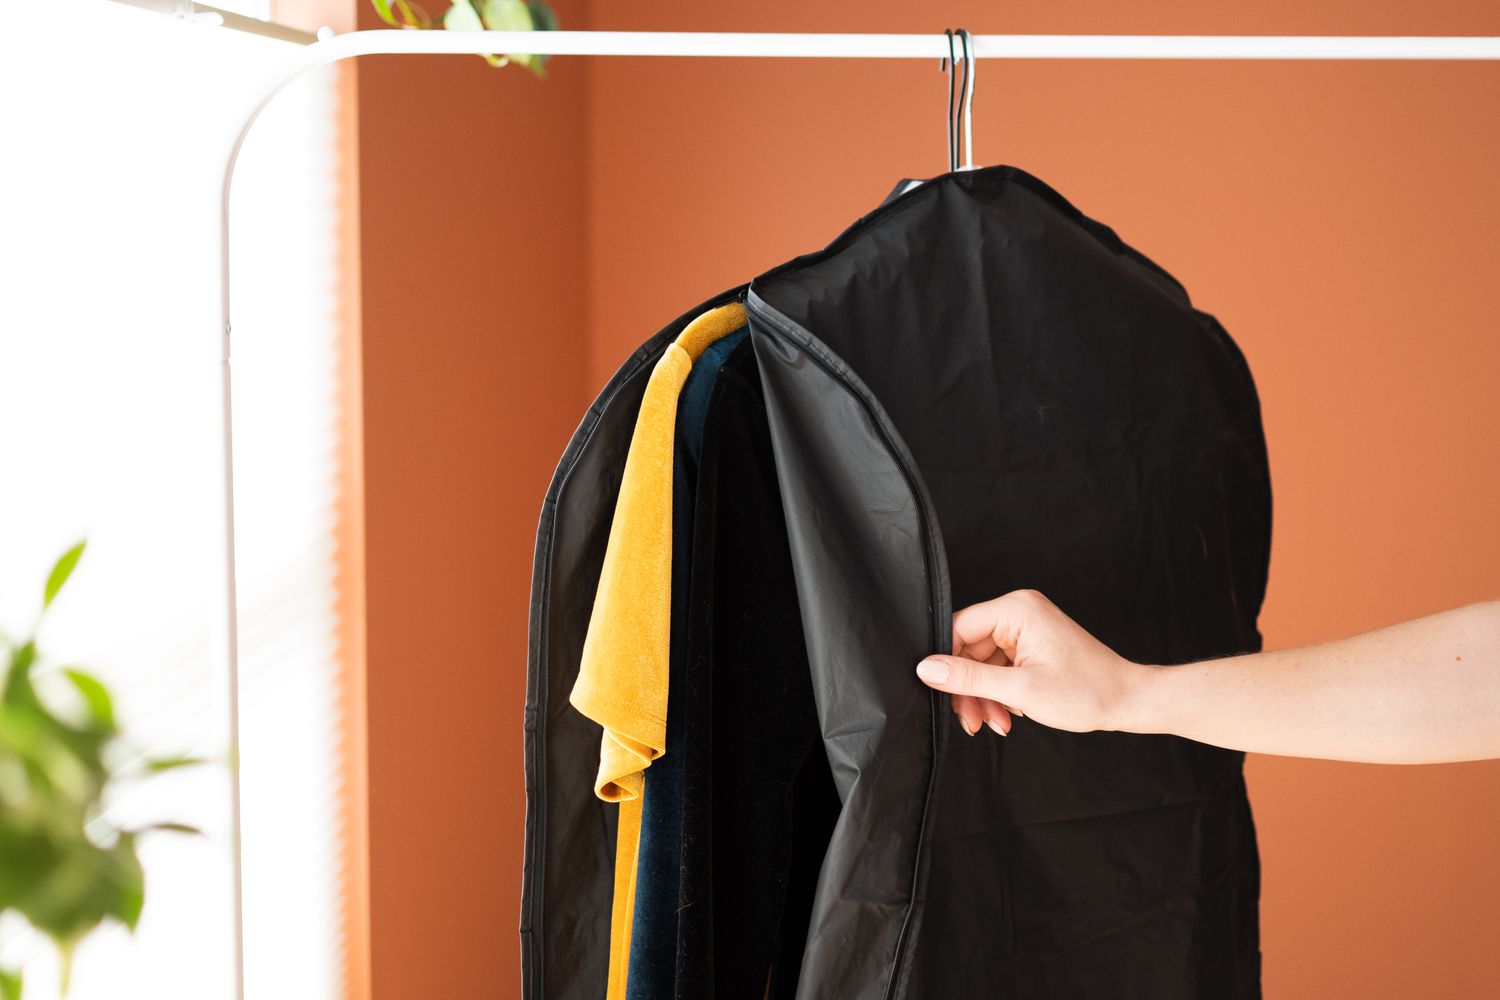 Samtkleider in einem schwarzen, waschbaren Kleidersack aufbewahrt und von Hand geöffnet